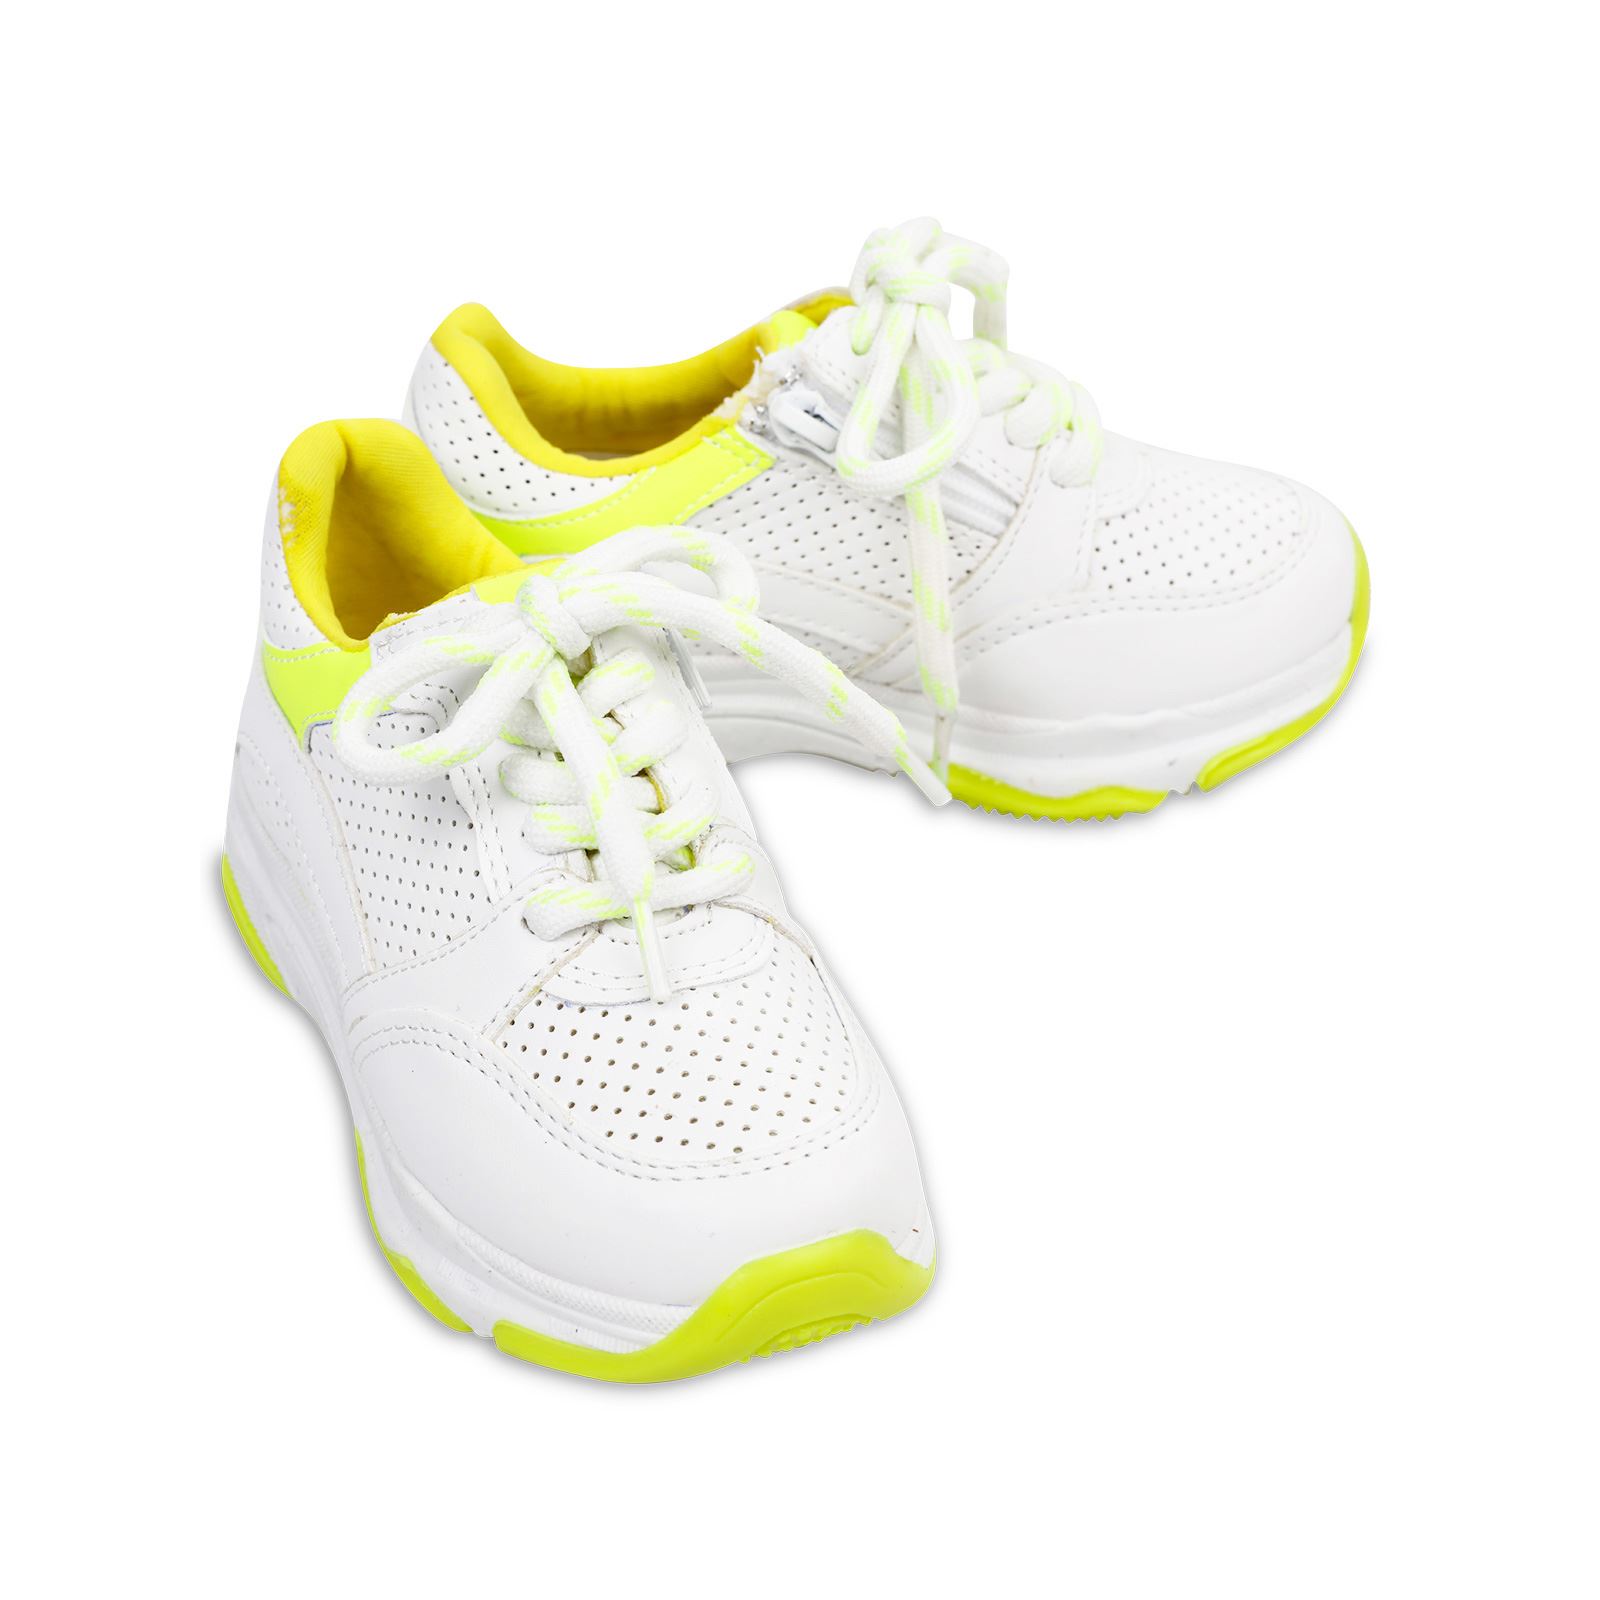 Harli Kız Çocuk Spor Ayakkabı 31-35 Numara Beyaz-Sarı